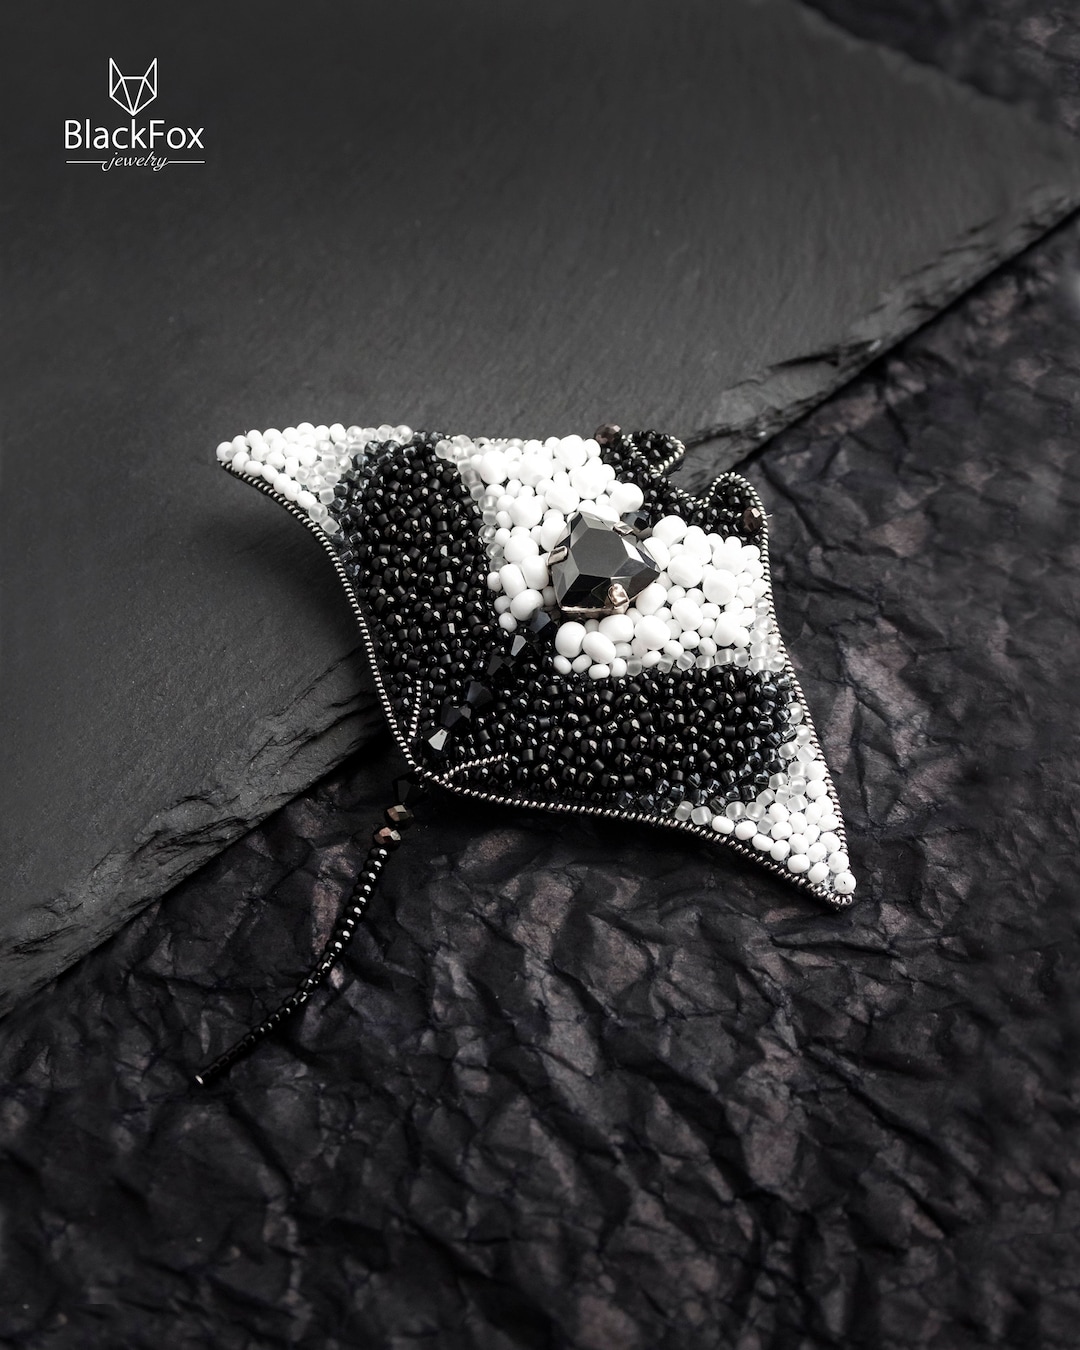 Manta Ray Beaded Brooch Seed Bead Embroidery Sea Stingray